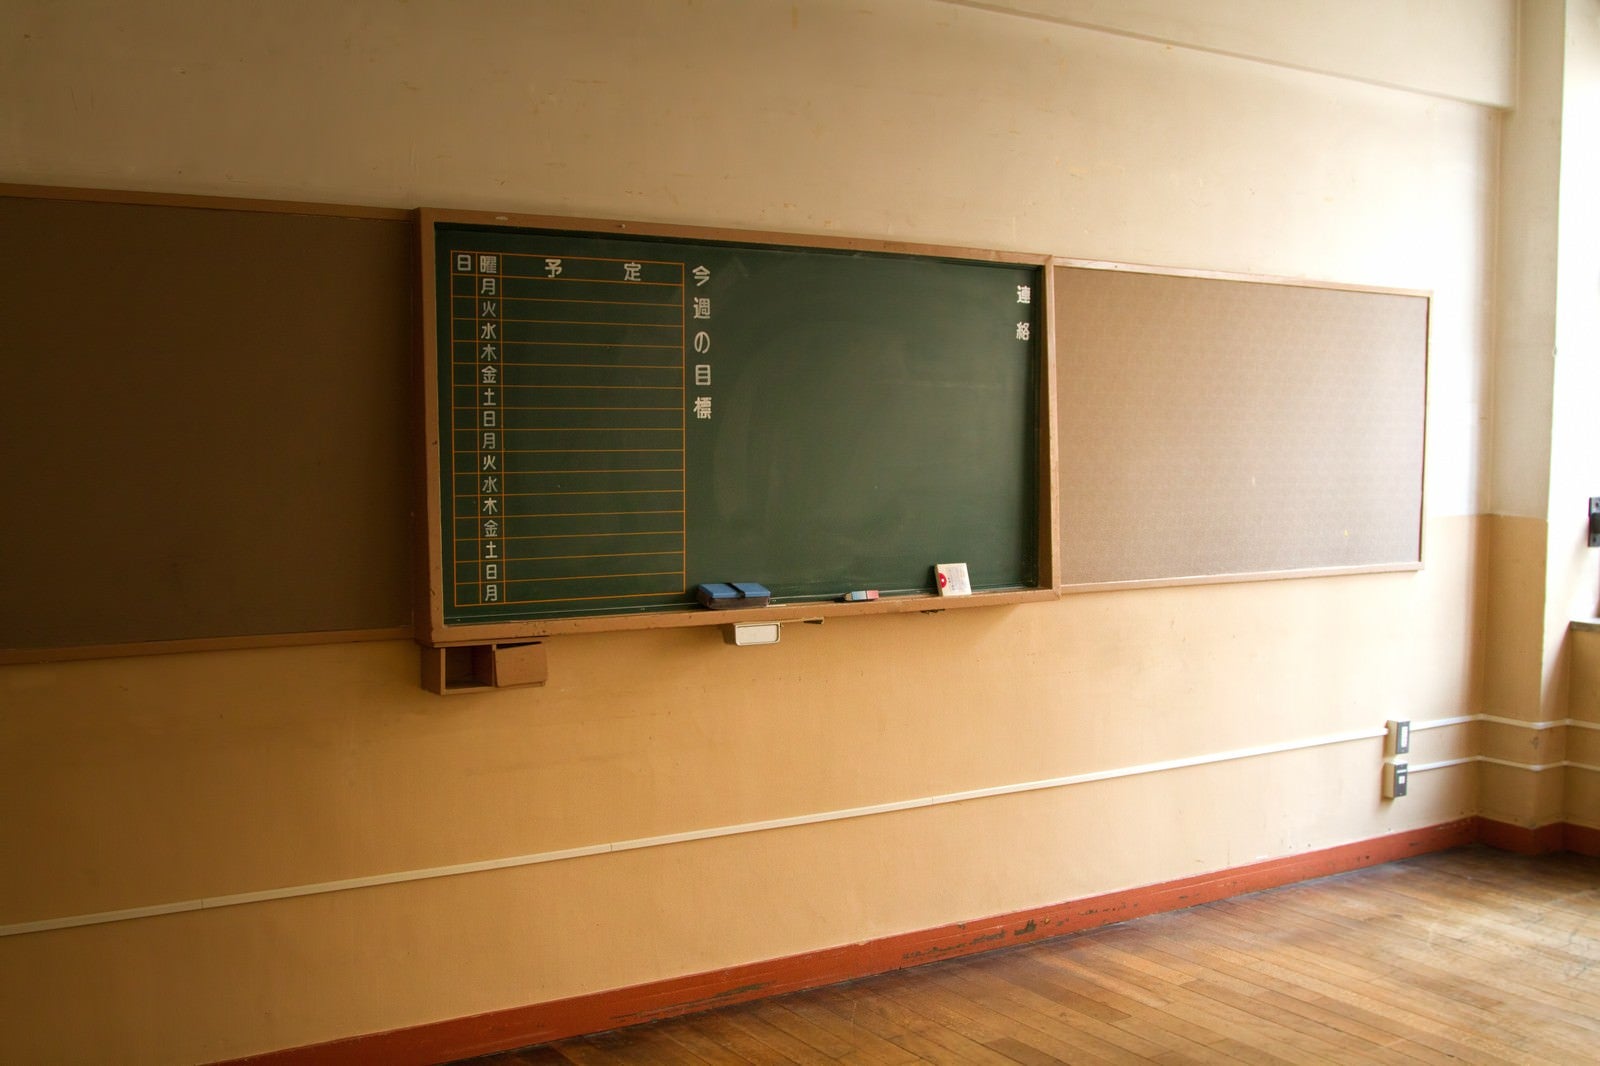 「放課後の黒板」の写真